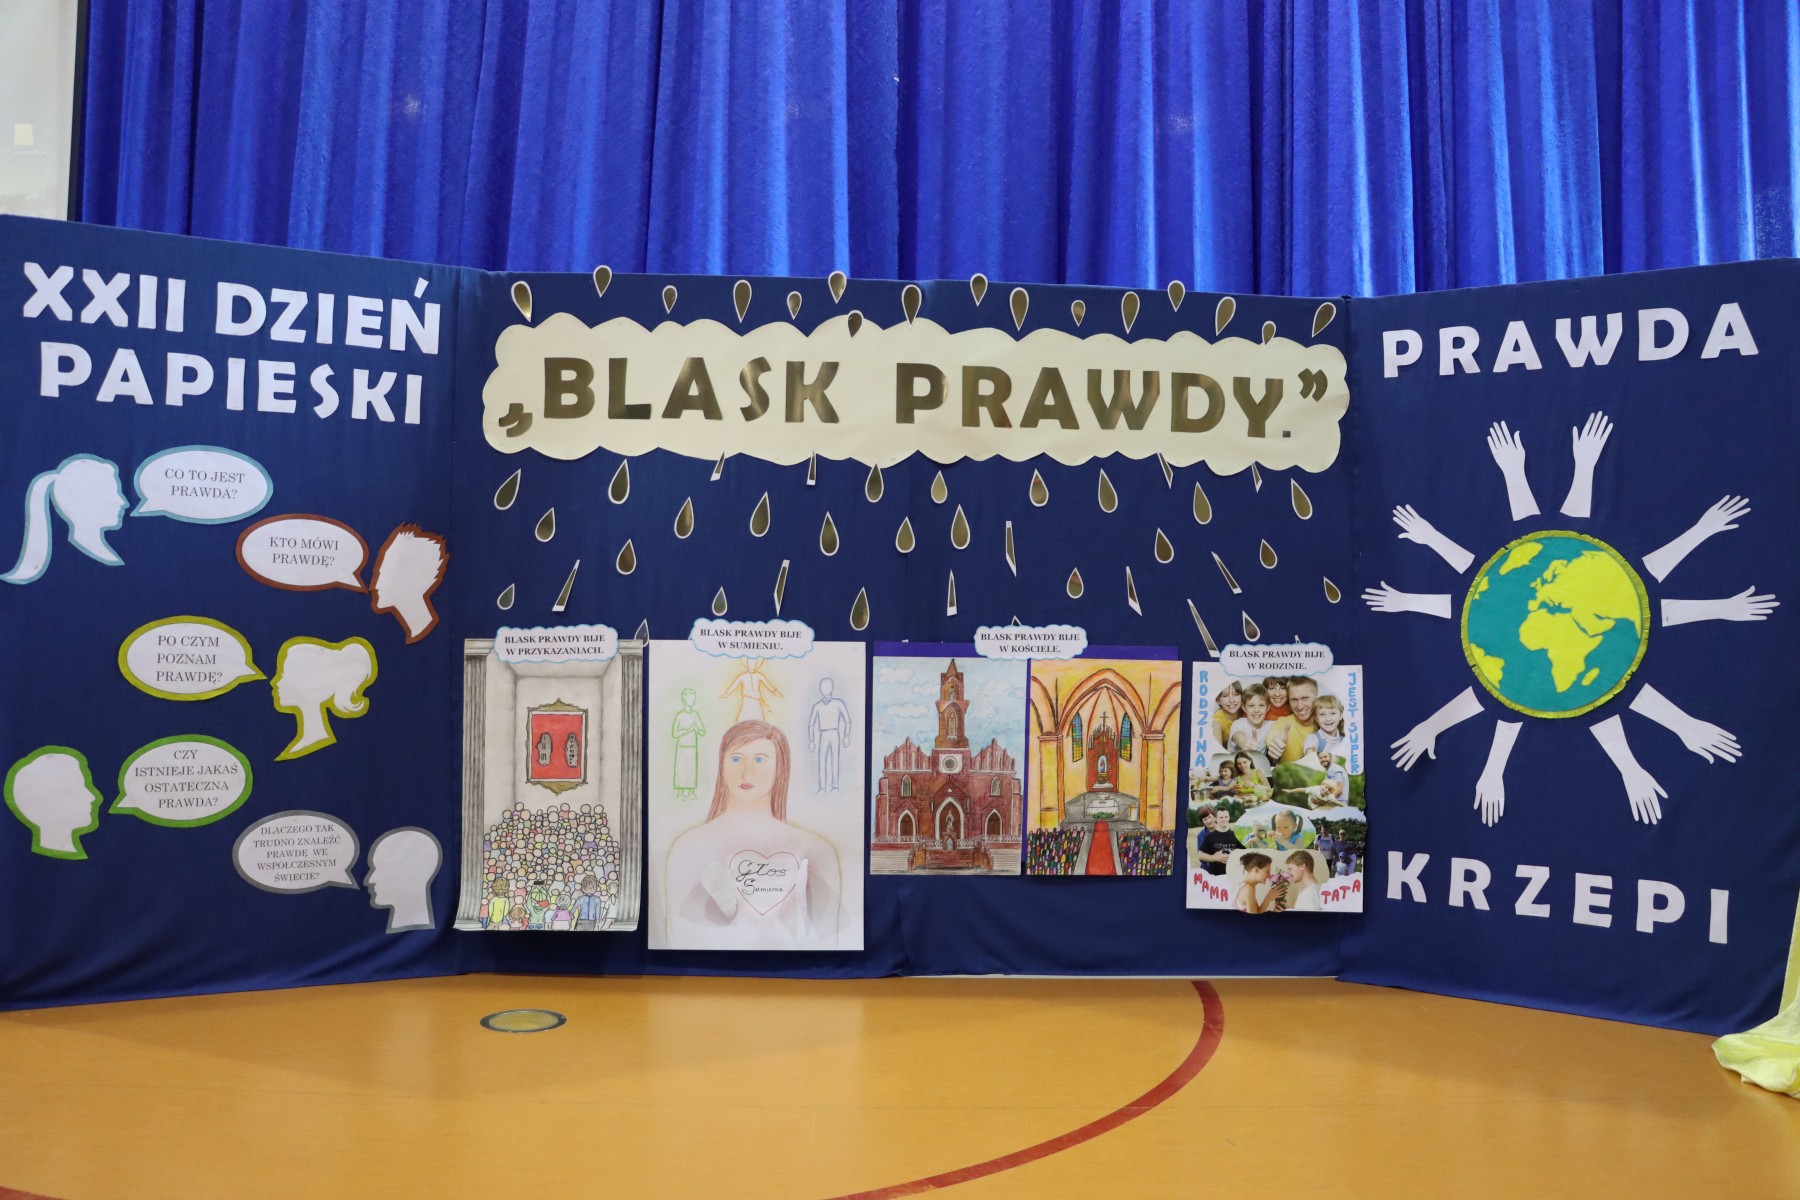 XXII Dzień Papieski obchodzony był w Polsce pod hasłem „Blask Prawdy”.  